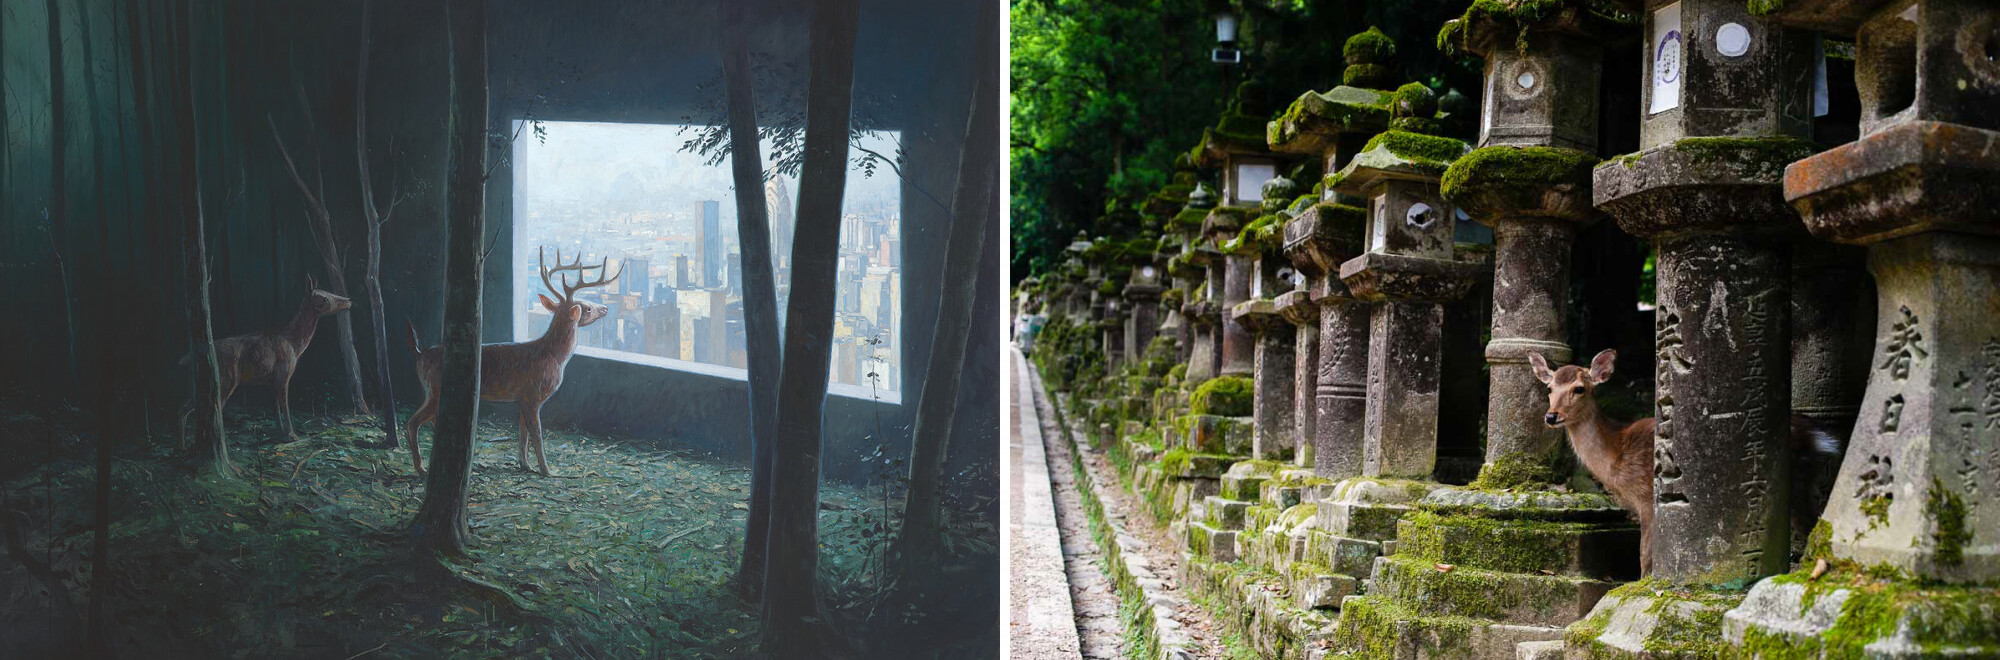 Shaun Tan Tales from the Inner City című könyve egy furcsa utazásra szólít, amelyben az állatok szemszögéből tekinthetünk városainkra és benne magunkra, emberekre; mindeközben a japán Nara városában valóban az utcán sétálnak a szarvasok.